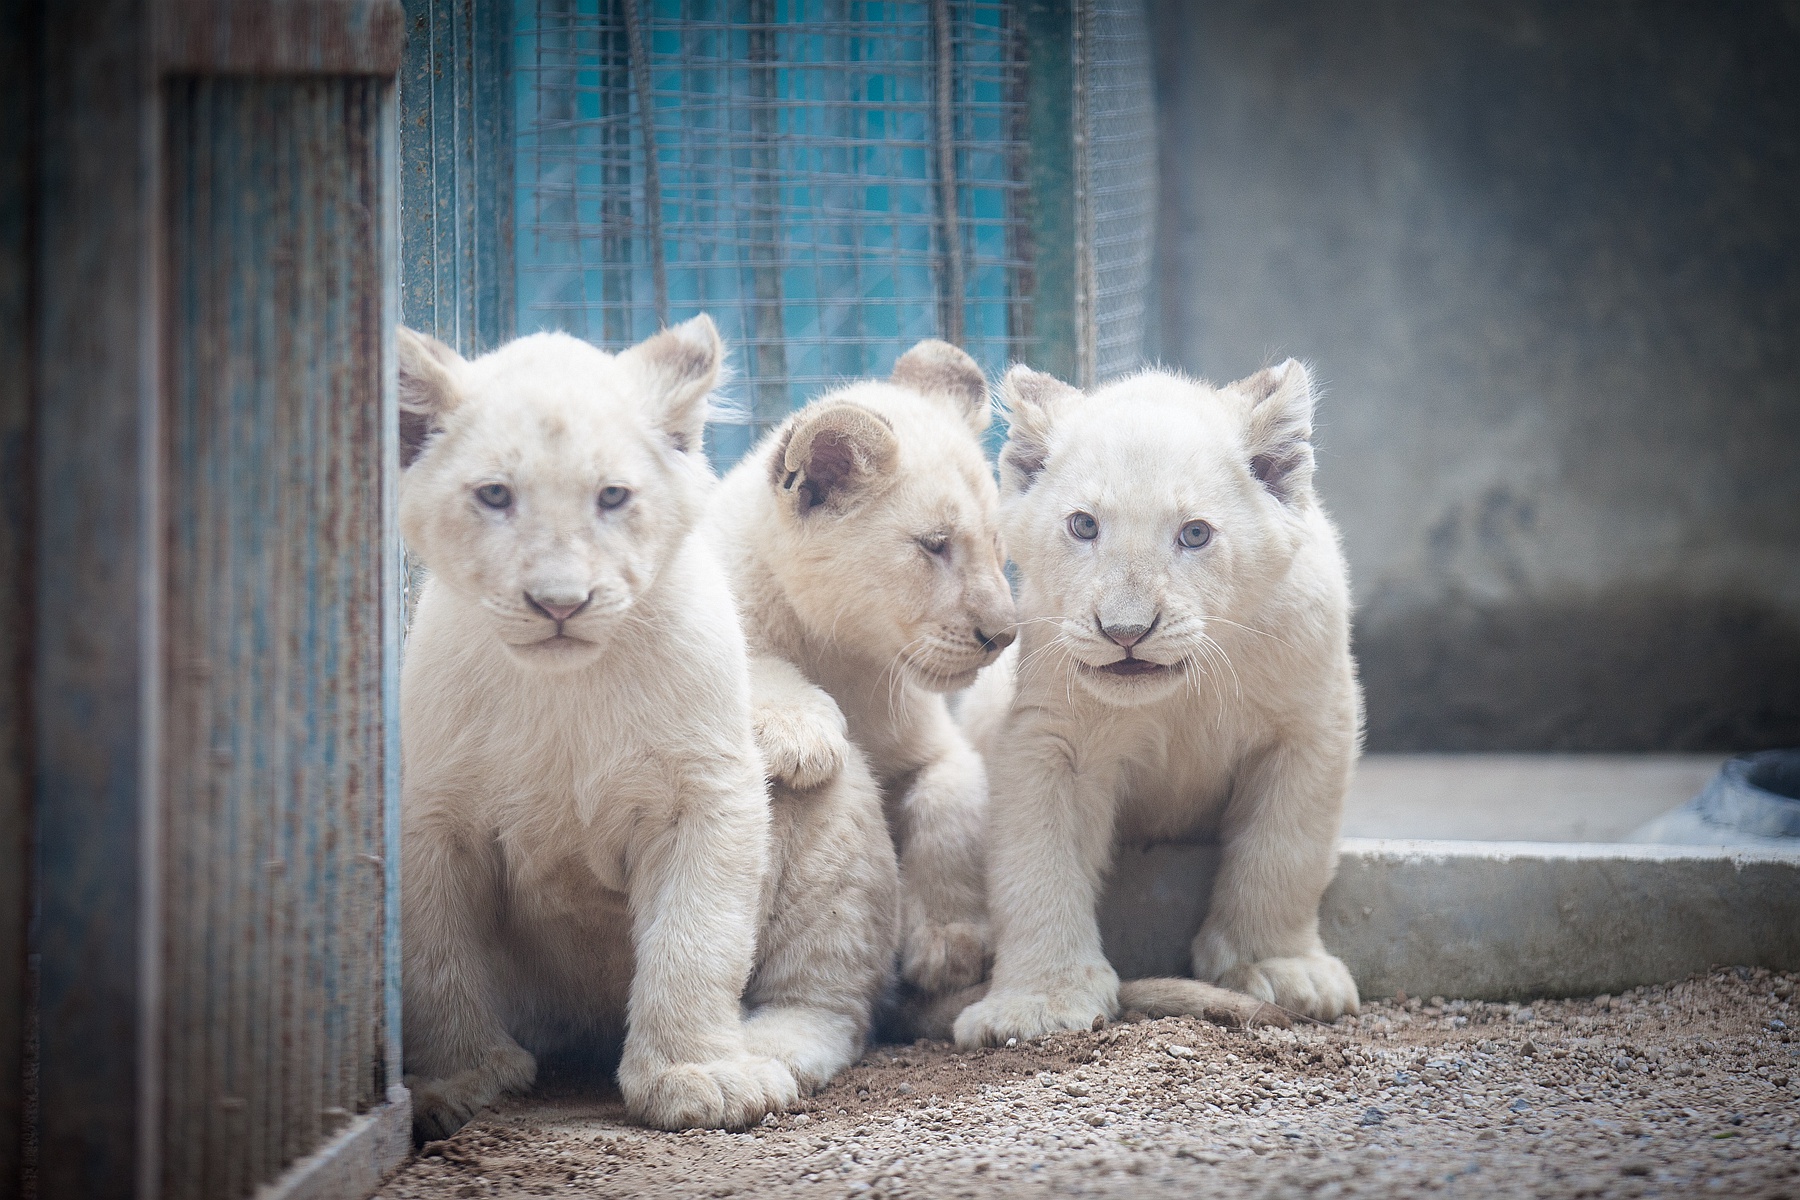 在饲养员和狮妈妈的照料下,三只银发碧眼的小白狮健壮可爱,活力十足